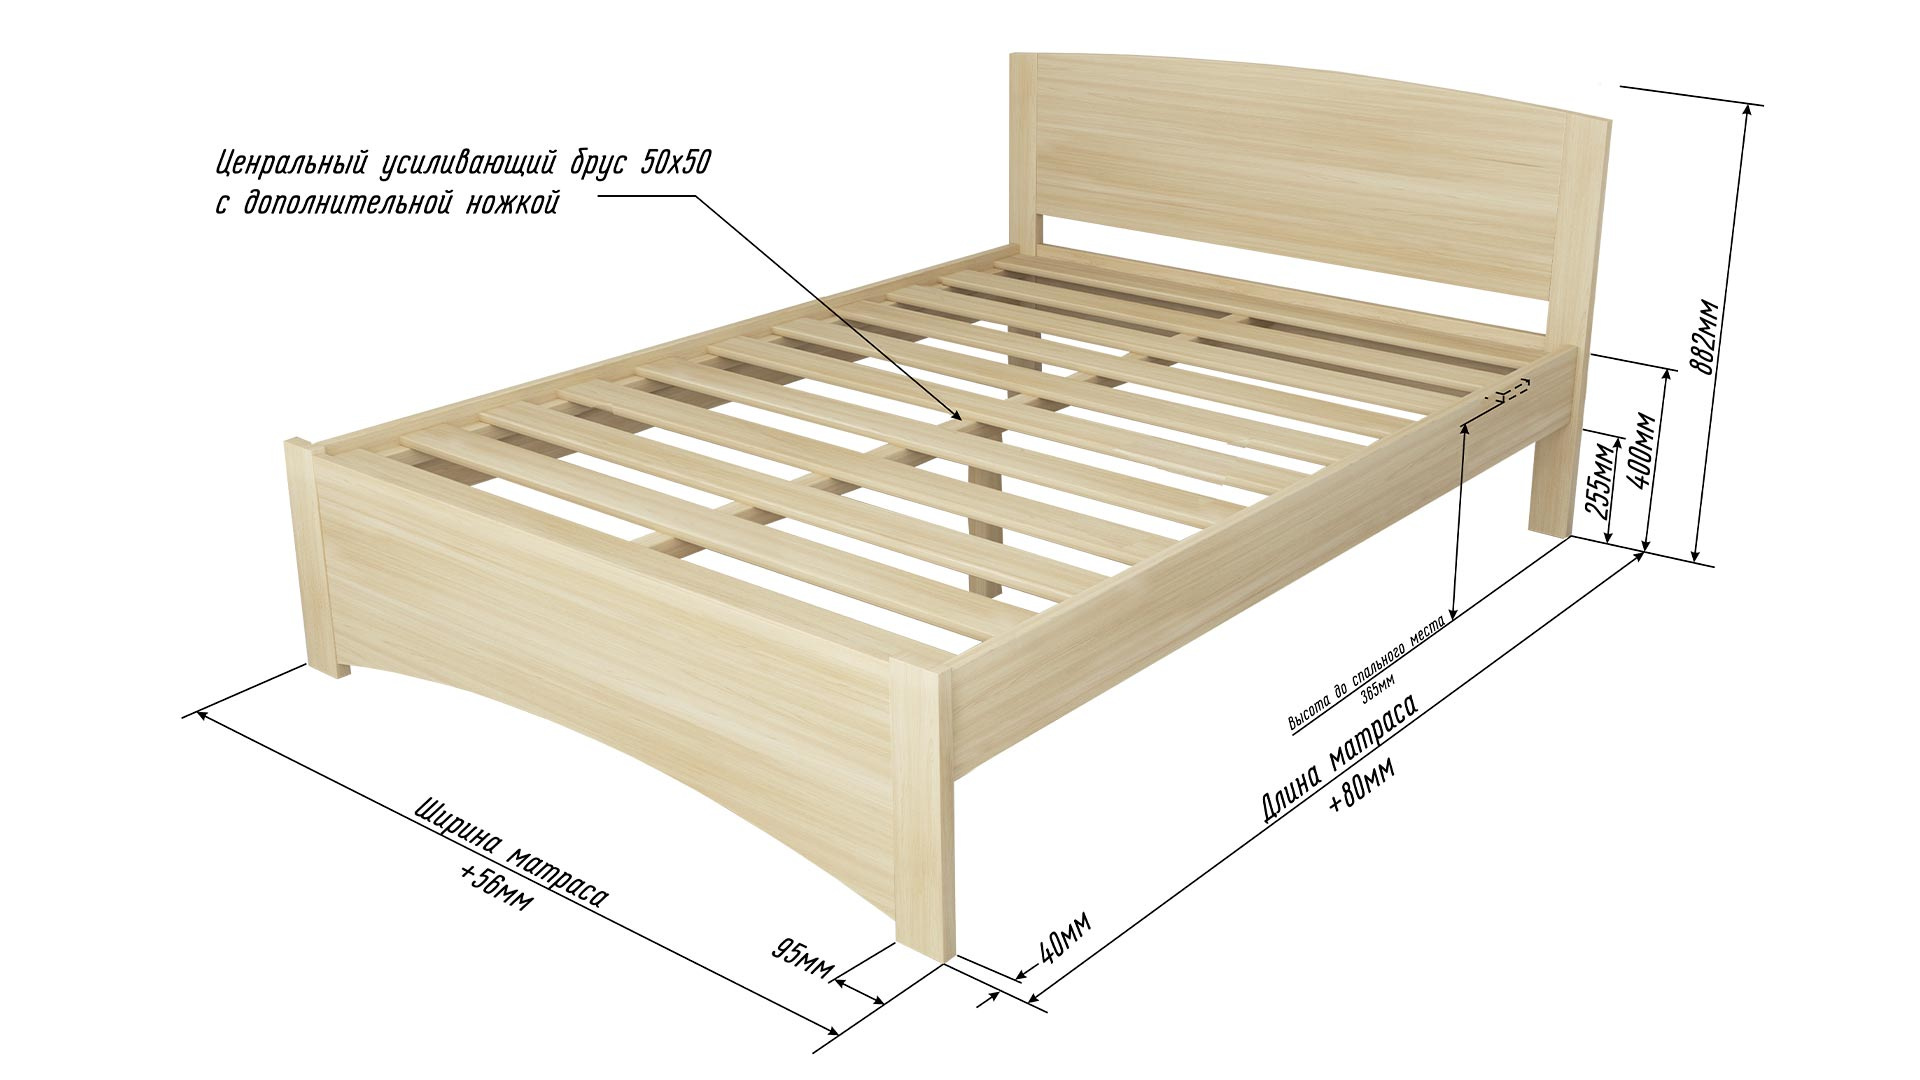 Срок службы деревянной кровати